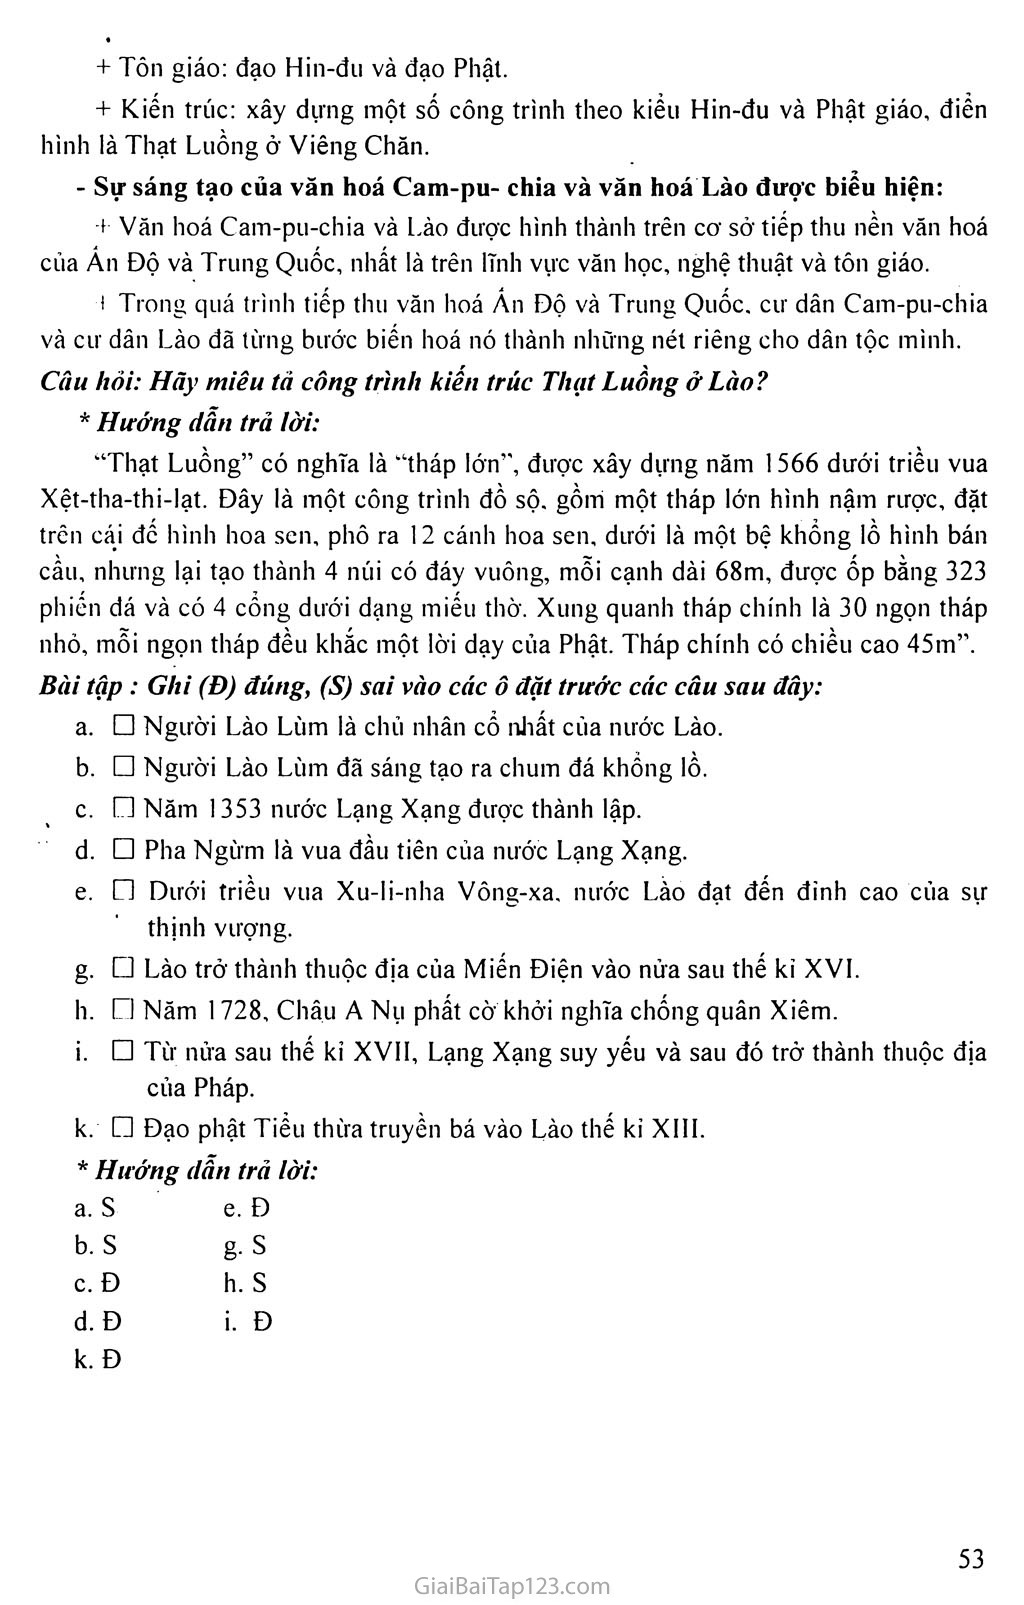 Bài 12: Vương quốc Cam-pu-chia và Vương quốc Lào trang 5